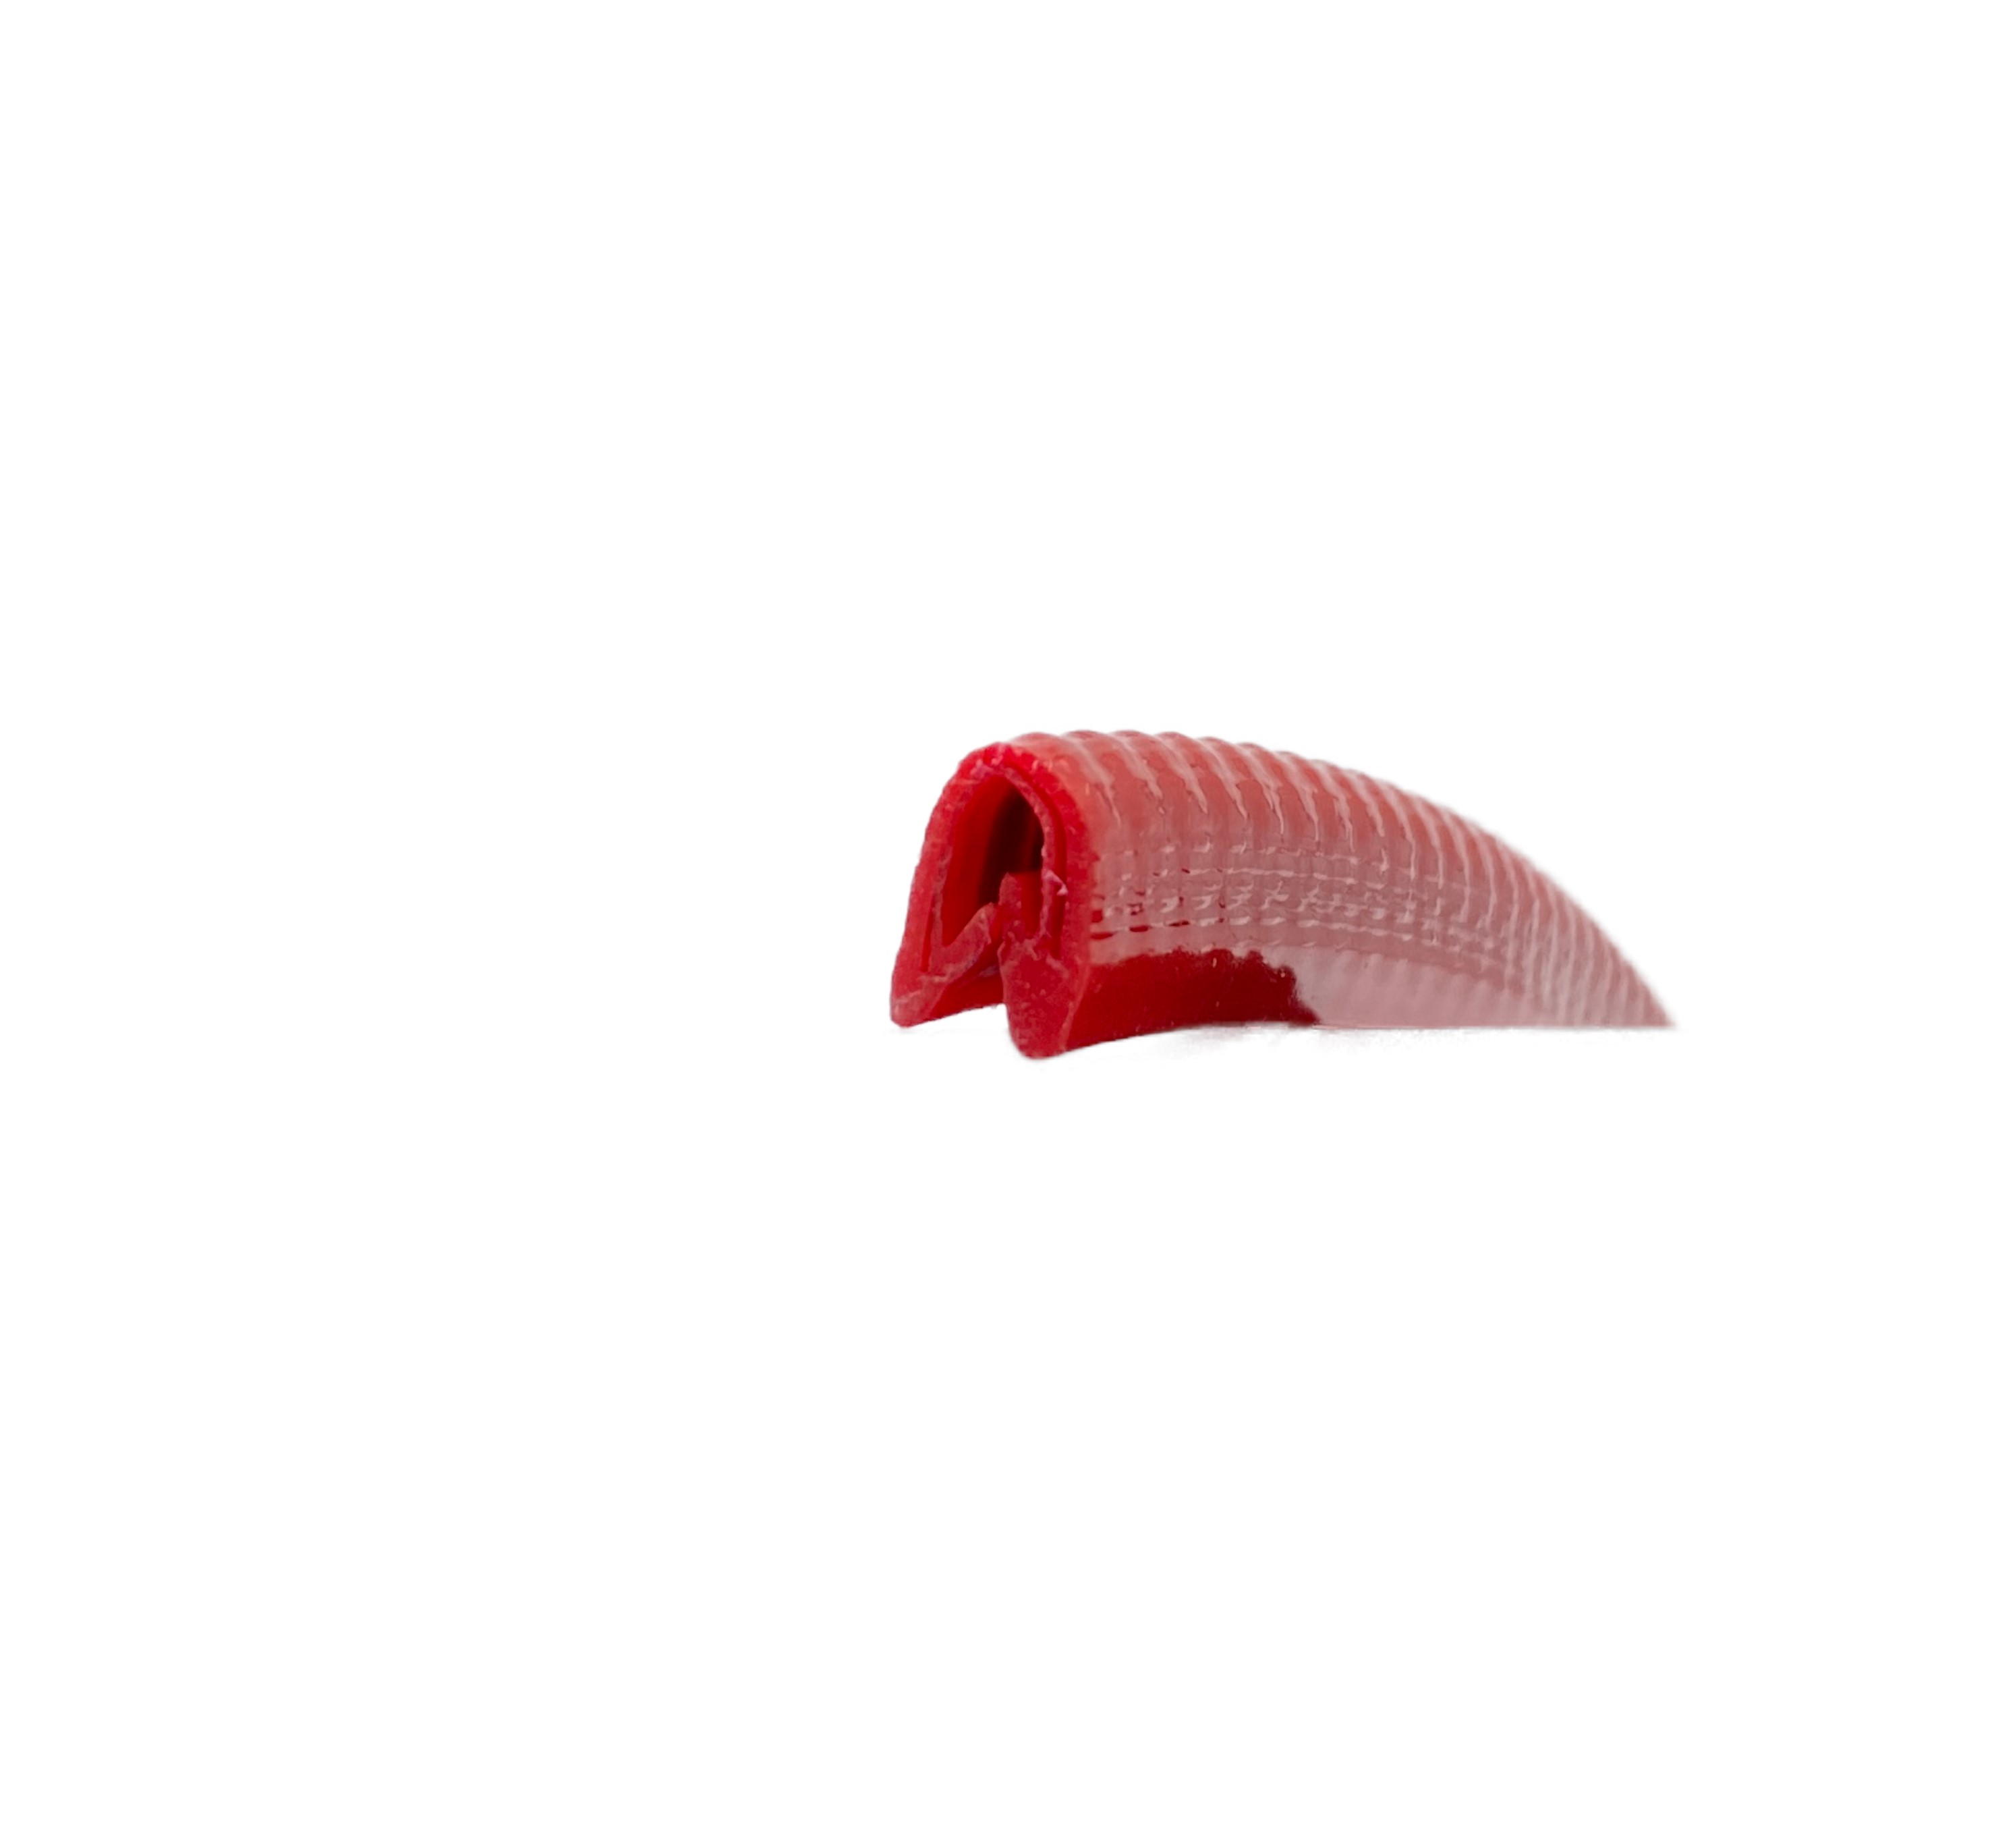 Kantenschutz mit Stahleinlage, Klemmbereich 1-2mm, rot